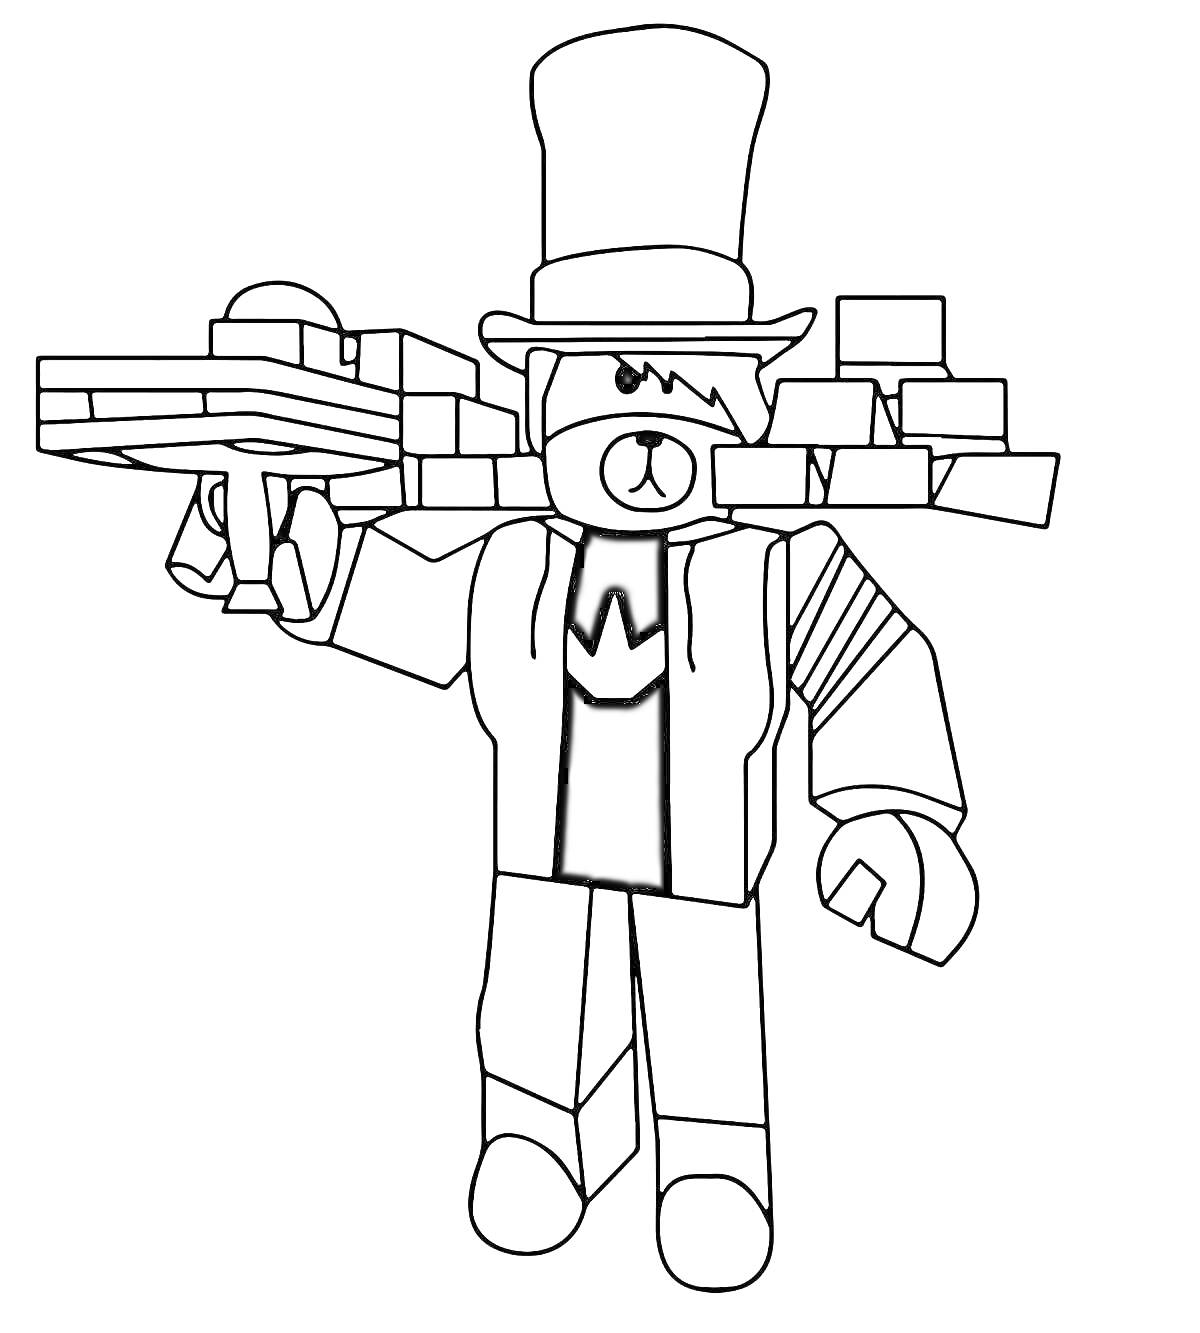 Раскраска Роблокс персонаж с цилиндром и с пушкой, состоящей из блоков